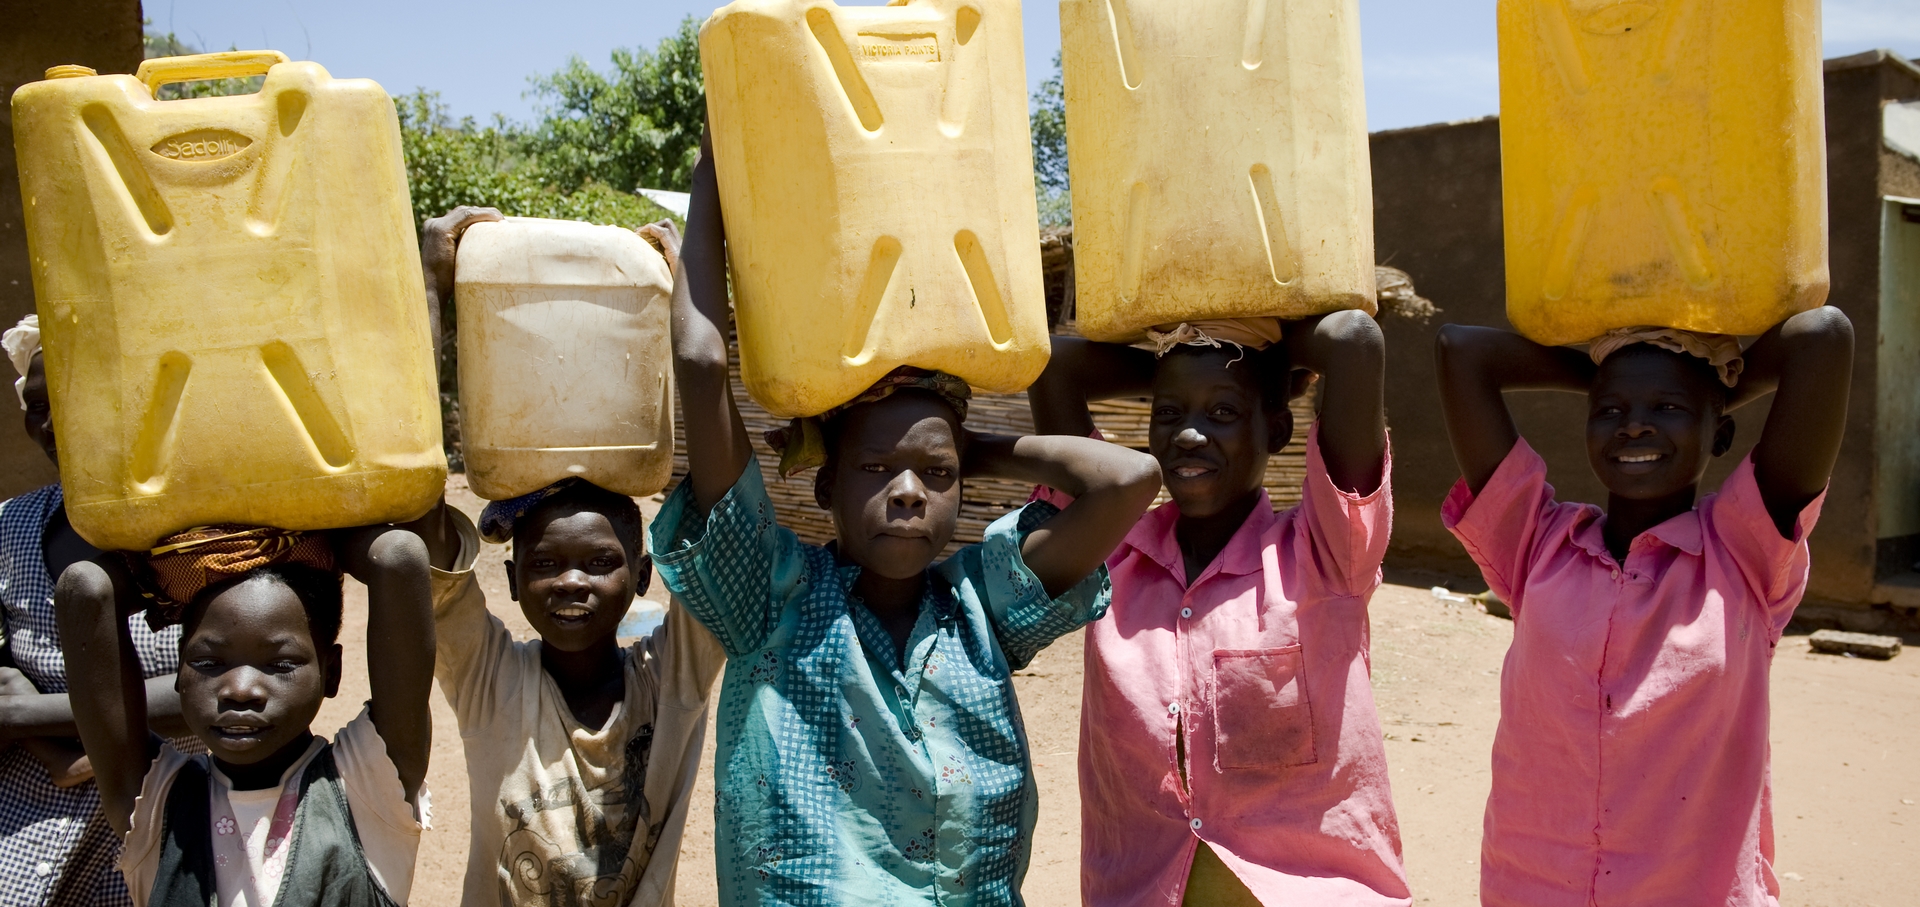 Nel mondo 663 milioni di persone vive senza accesso all’acqua potabile. Ogni giorno 1.000 bambini muoiono a causa di malattie come la diarrea, legate all’uso di acqua non sicura, e di assenza di servizi igienici e sanitari adeguati.